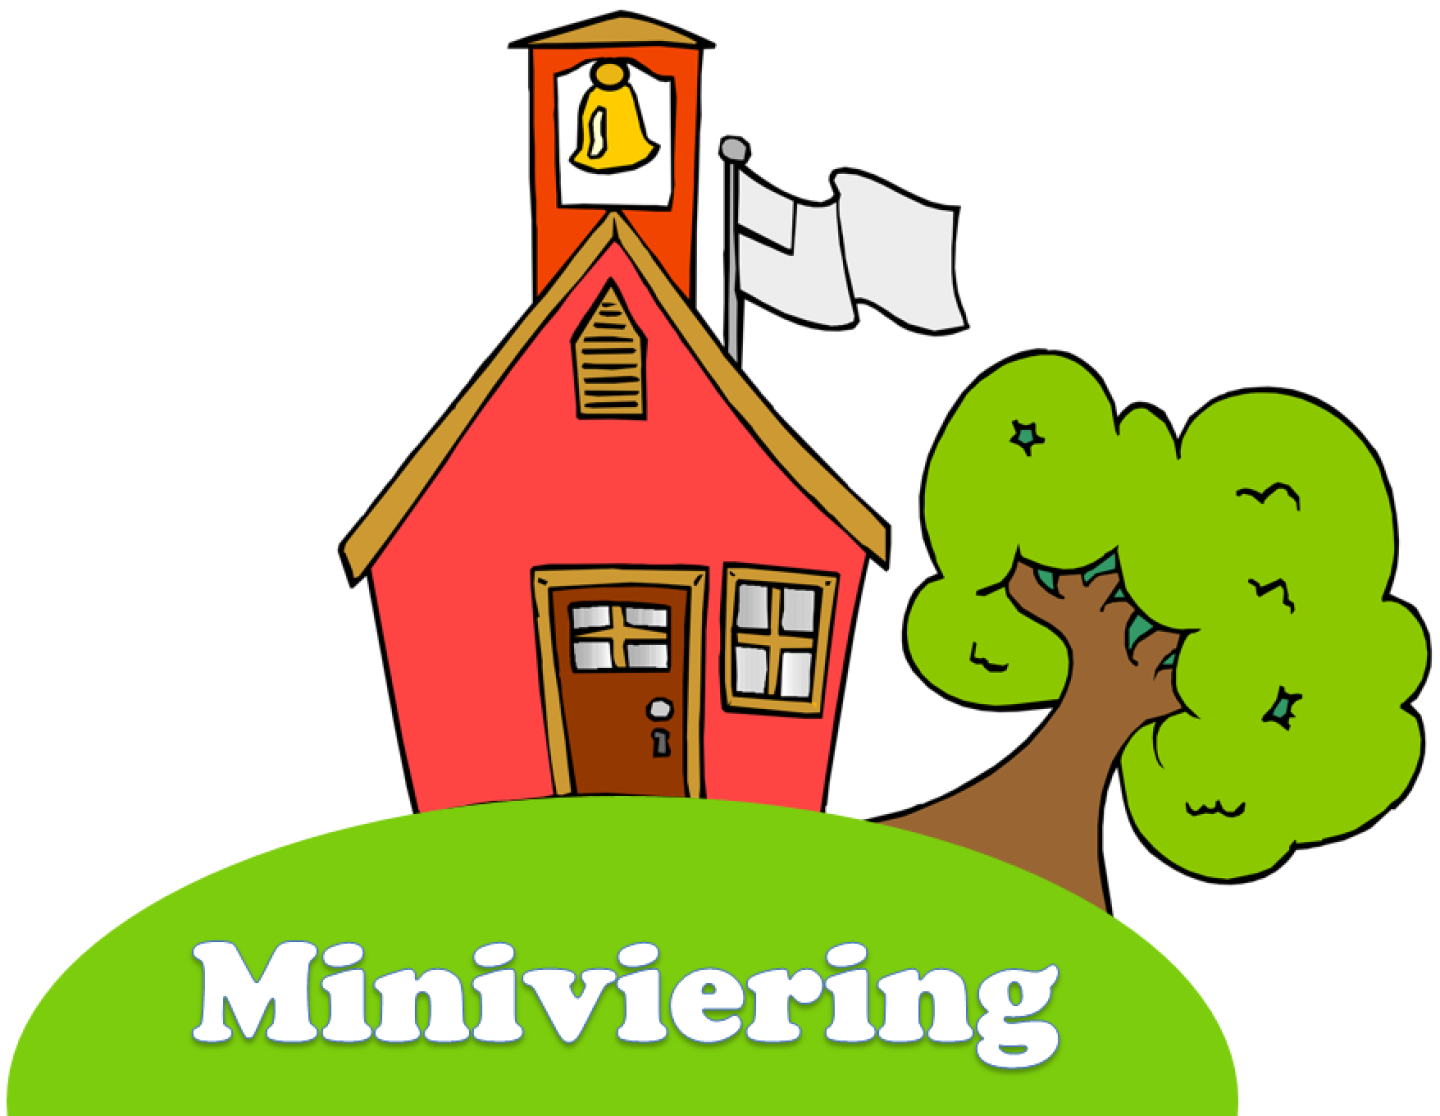 Miniviering logo